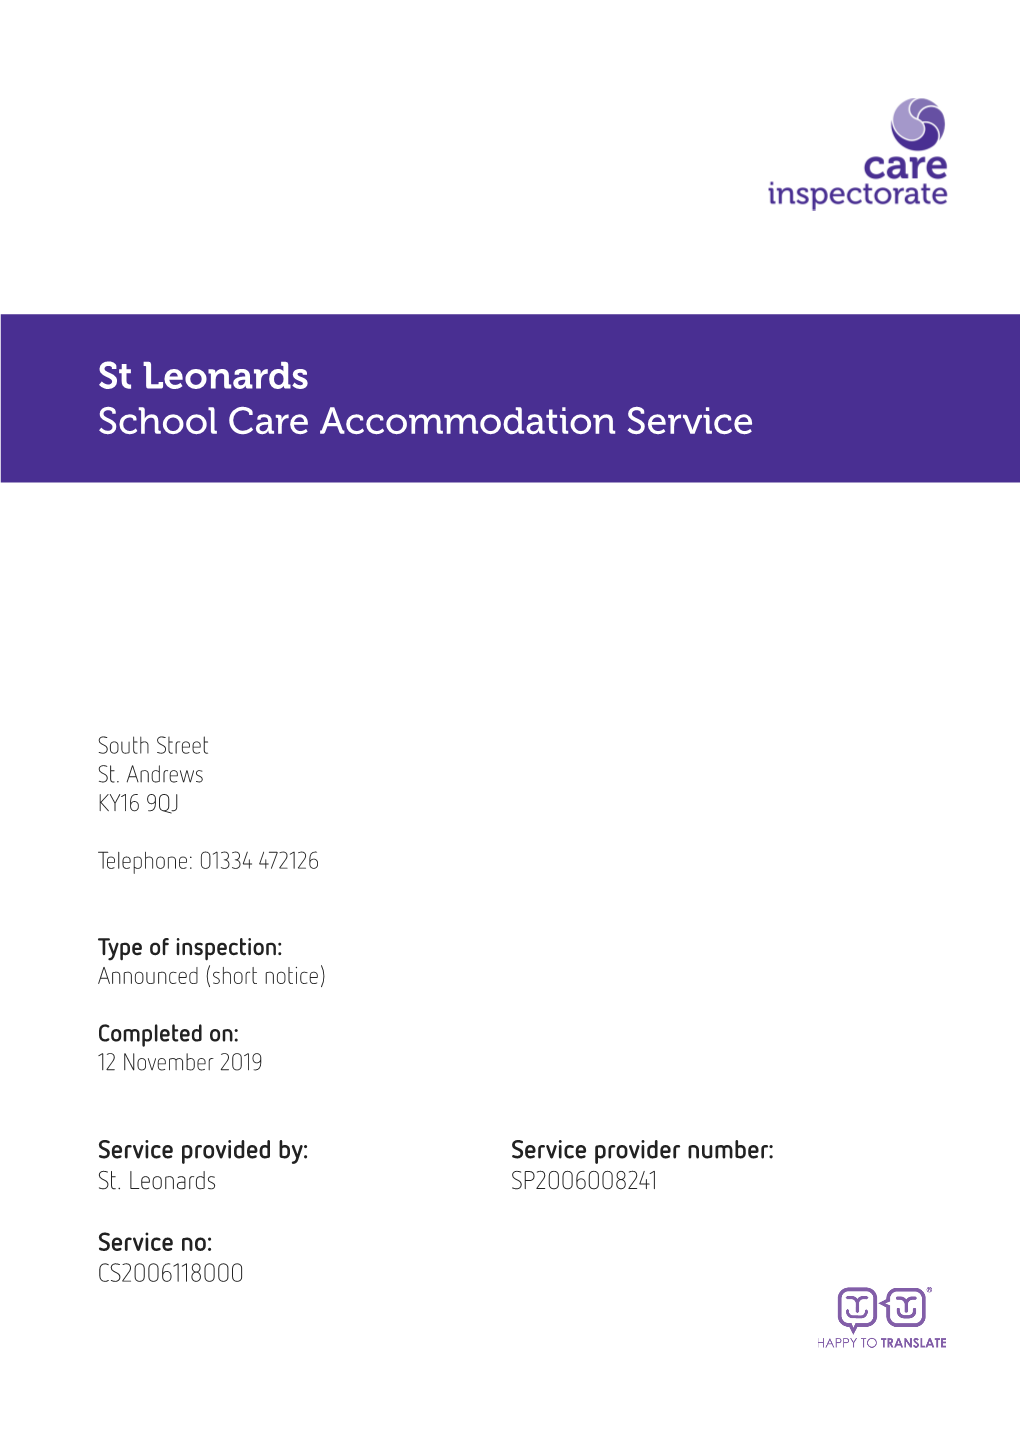 St Leonards School Care Accommodation Service